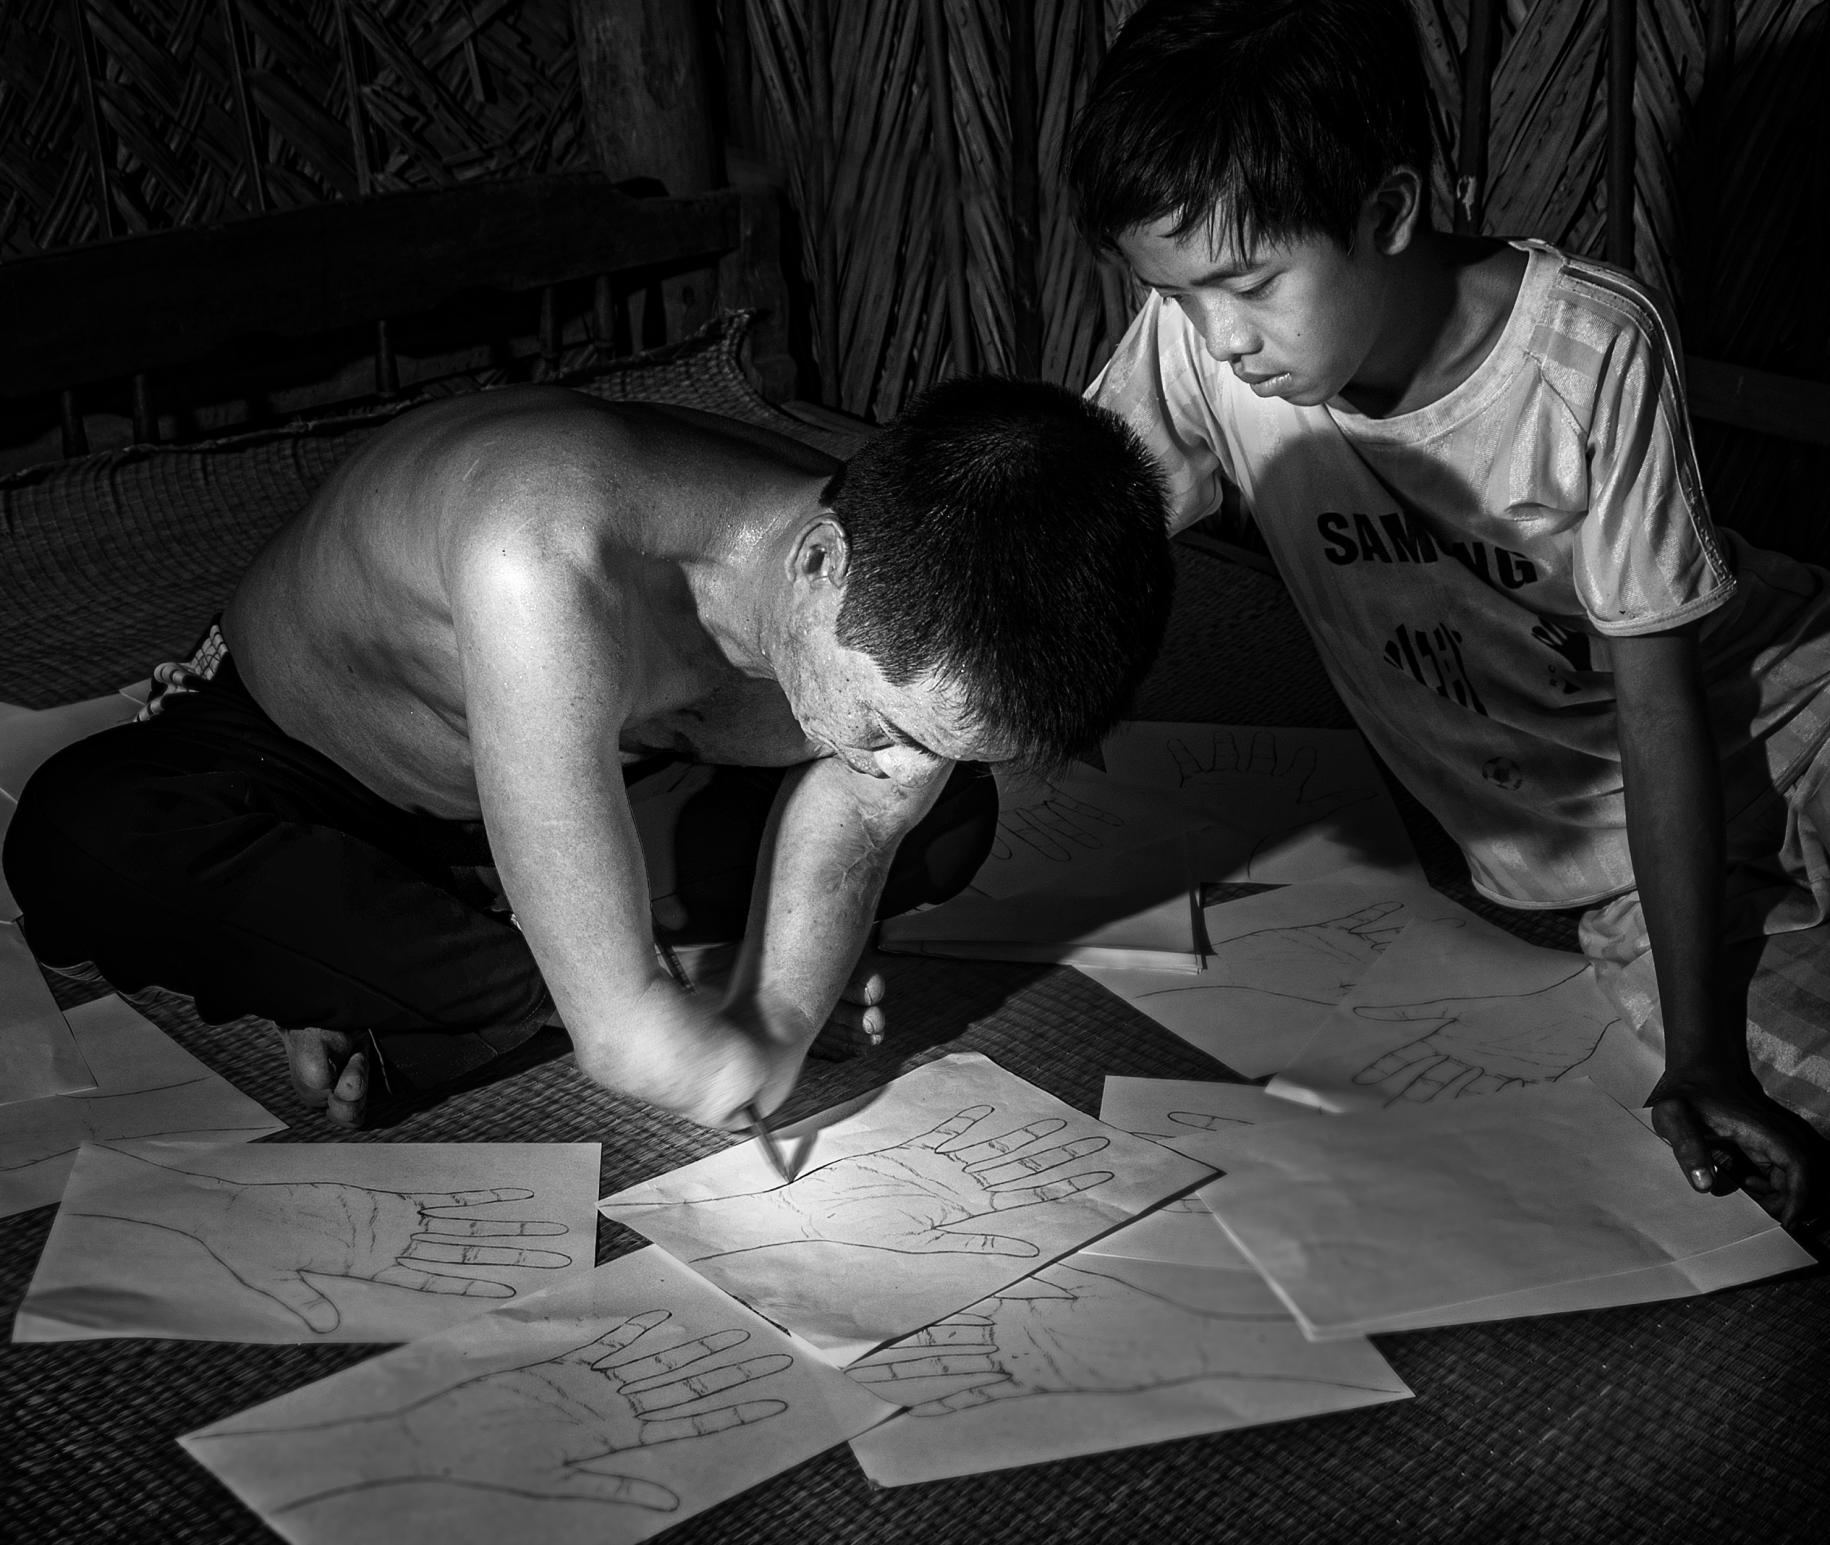 صورة بالأبيض والأسود لرجل وصبي يجلسان معًا على الأرض يرسمان ويكتبان على أوراق.